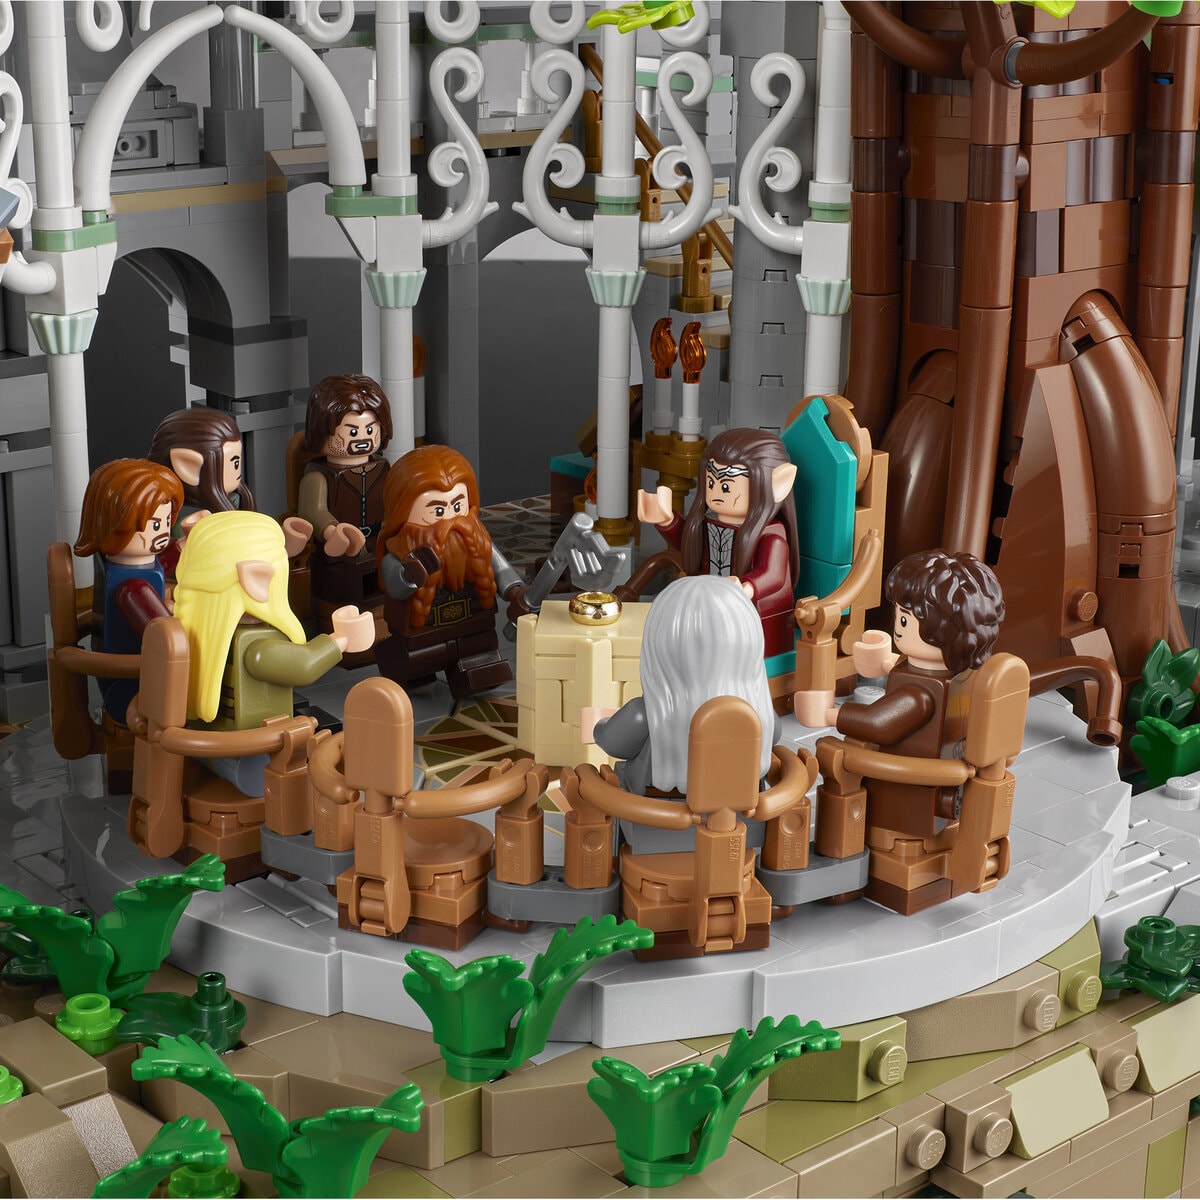 Lego imagine le pays de Rivendell du Seigneur des Anneaux avec un